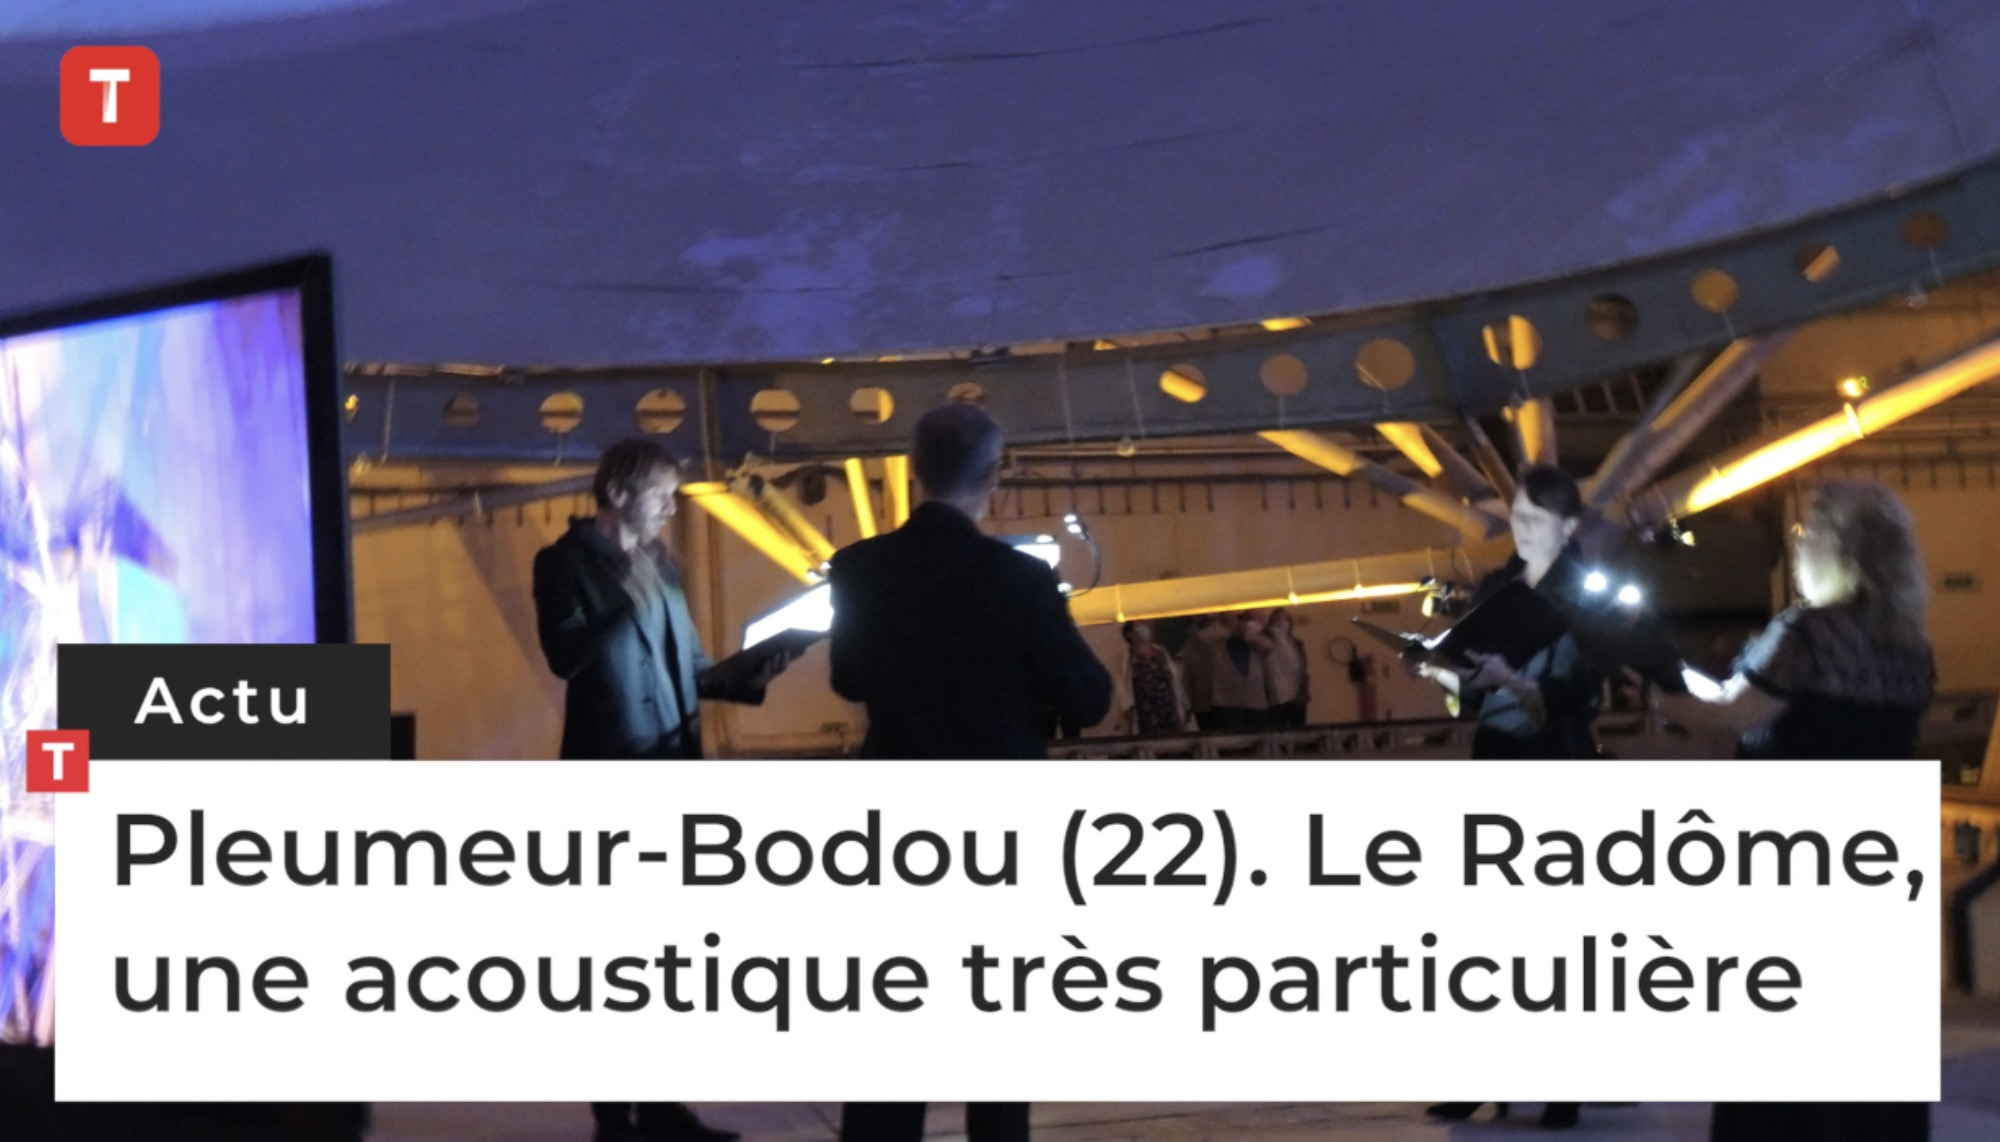 Pleumeur-Bodou (22). Le Radôme, une acoustique très particulière (Le Télégramme)